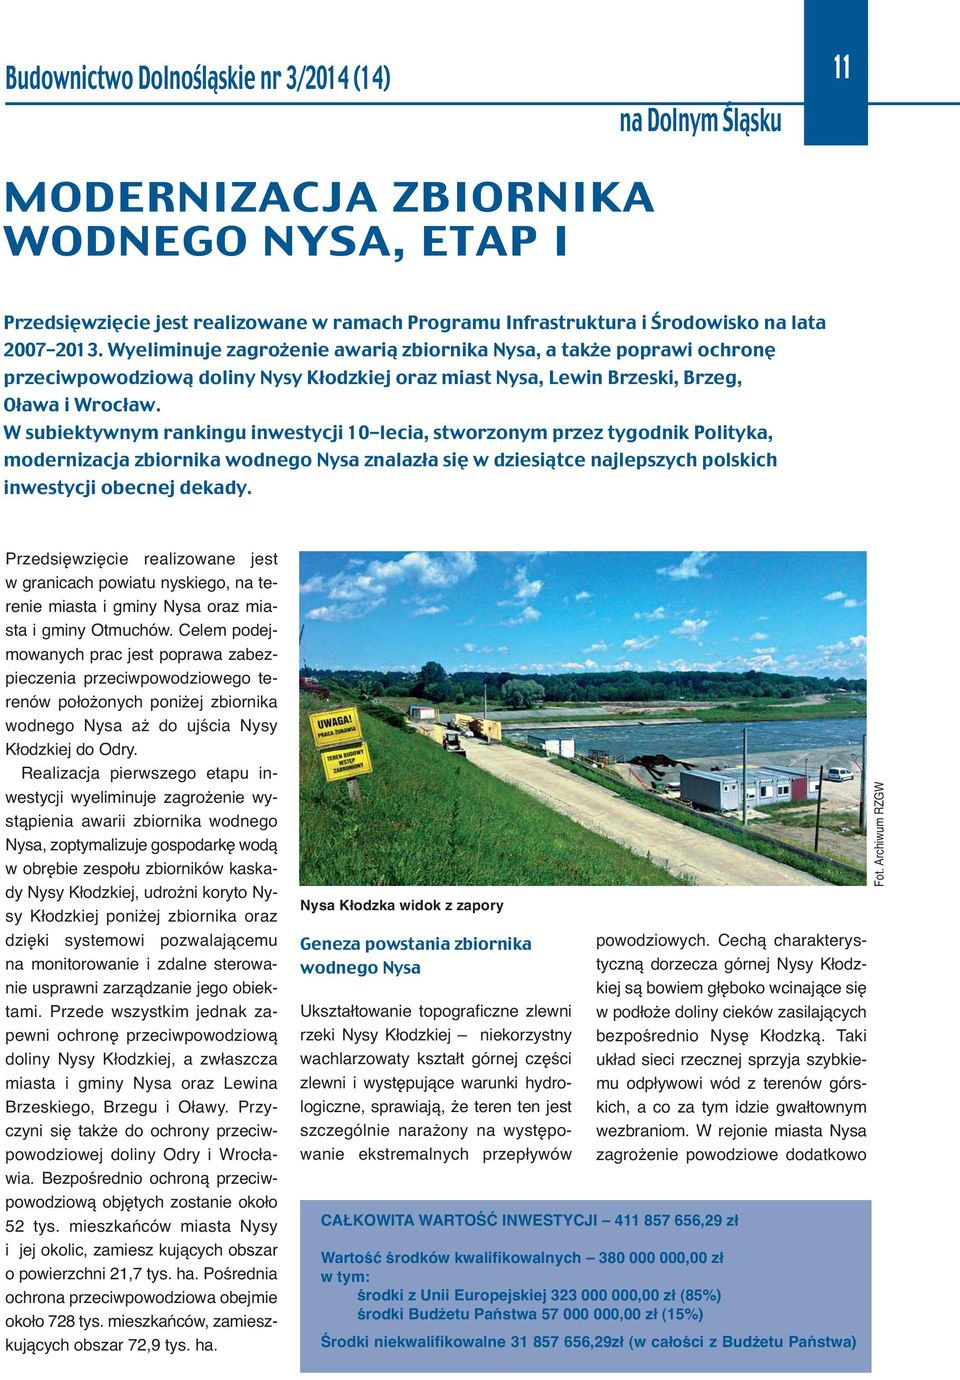 W subiektywnym rankingu inwestycji 10-lecia, stworzonym przez tygodnik Polityka, modernizacja zbiornika wodnego Nysa znalazła się w dziesiątce najlepszych polskich inwestycji obecnej dekady.